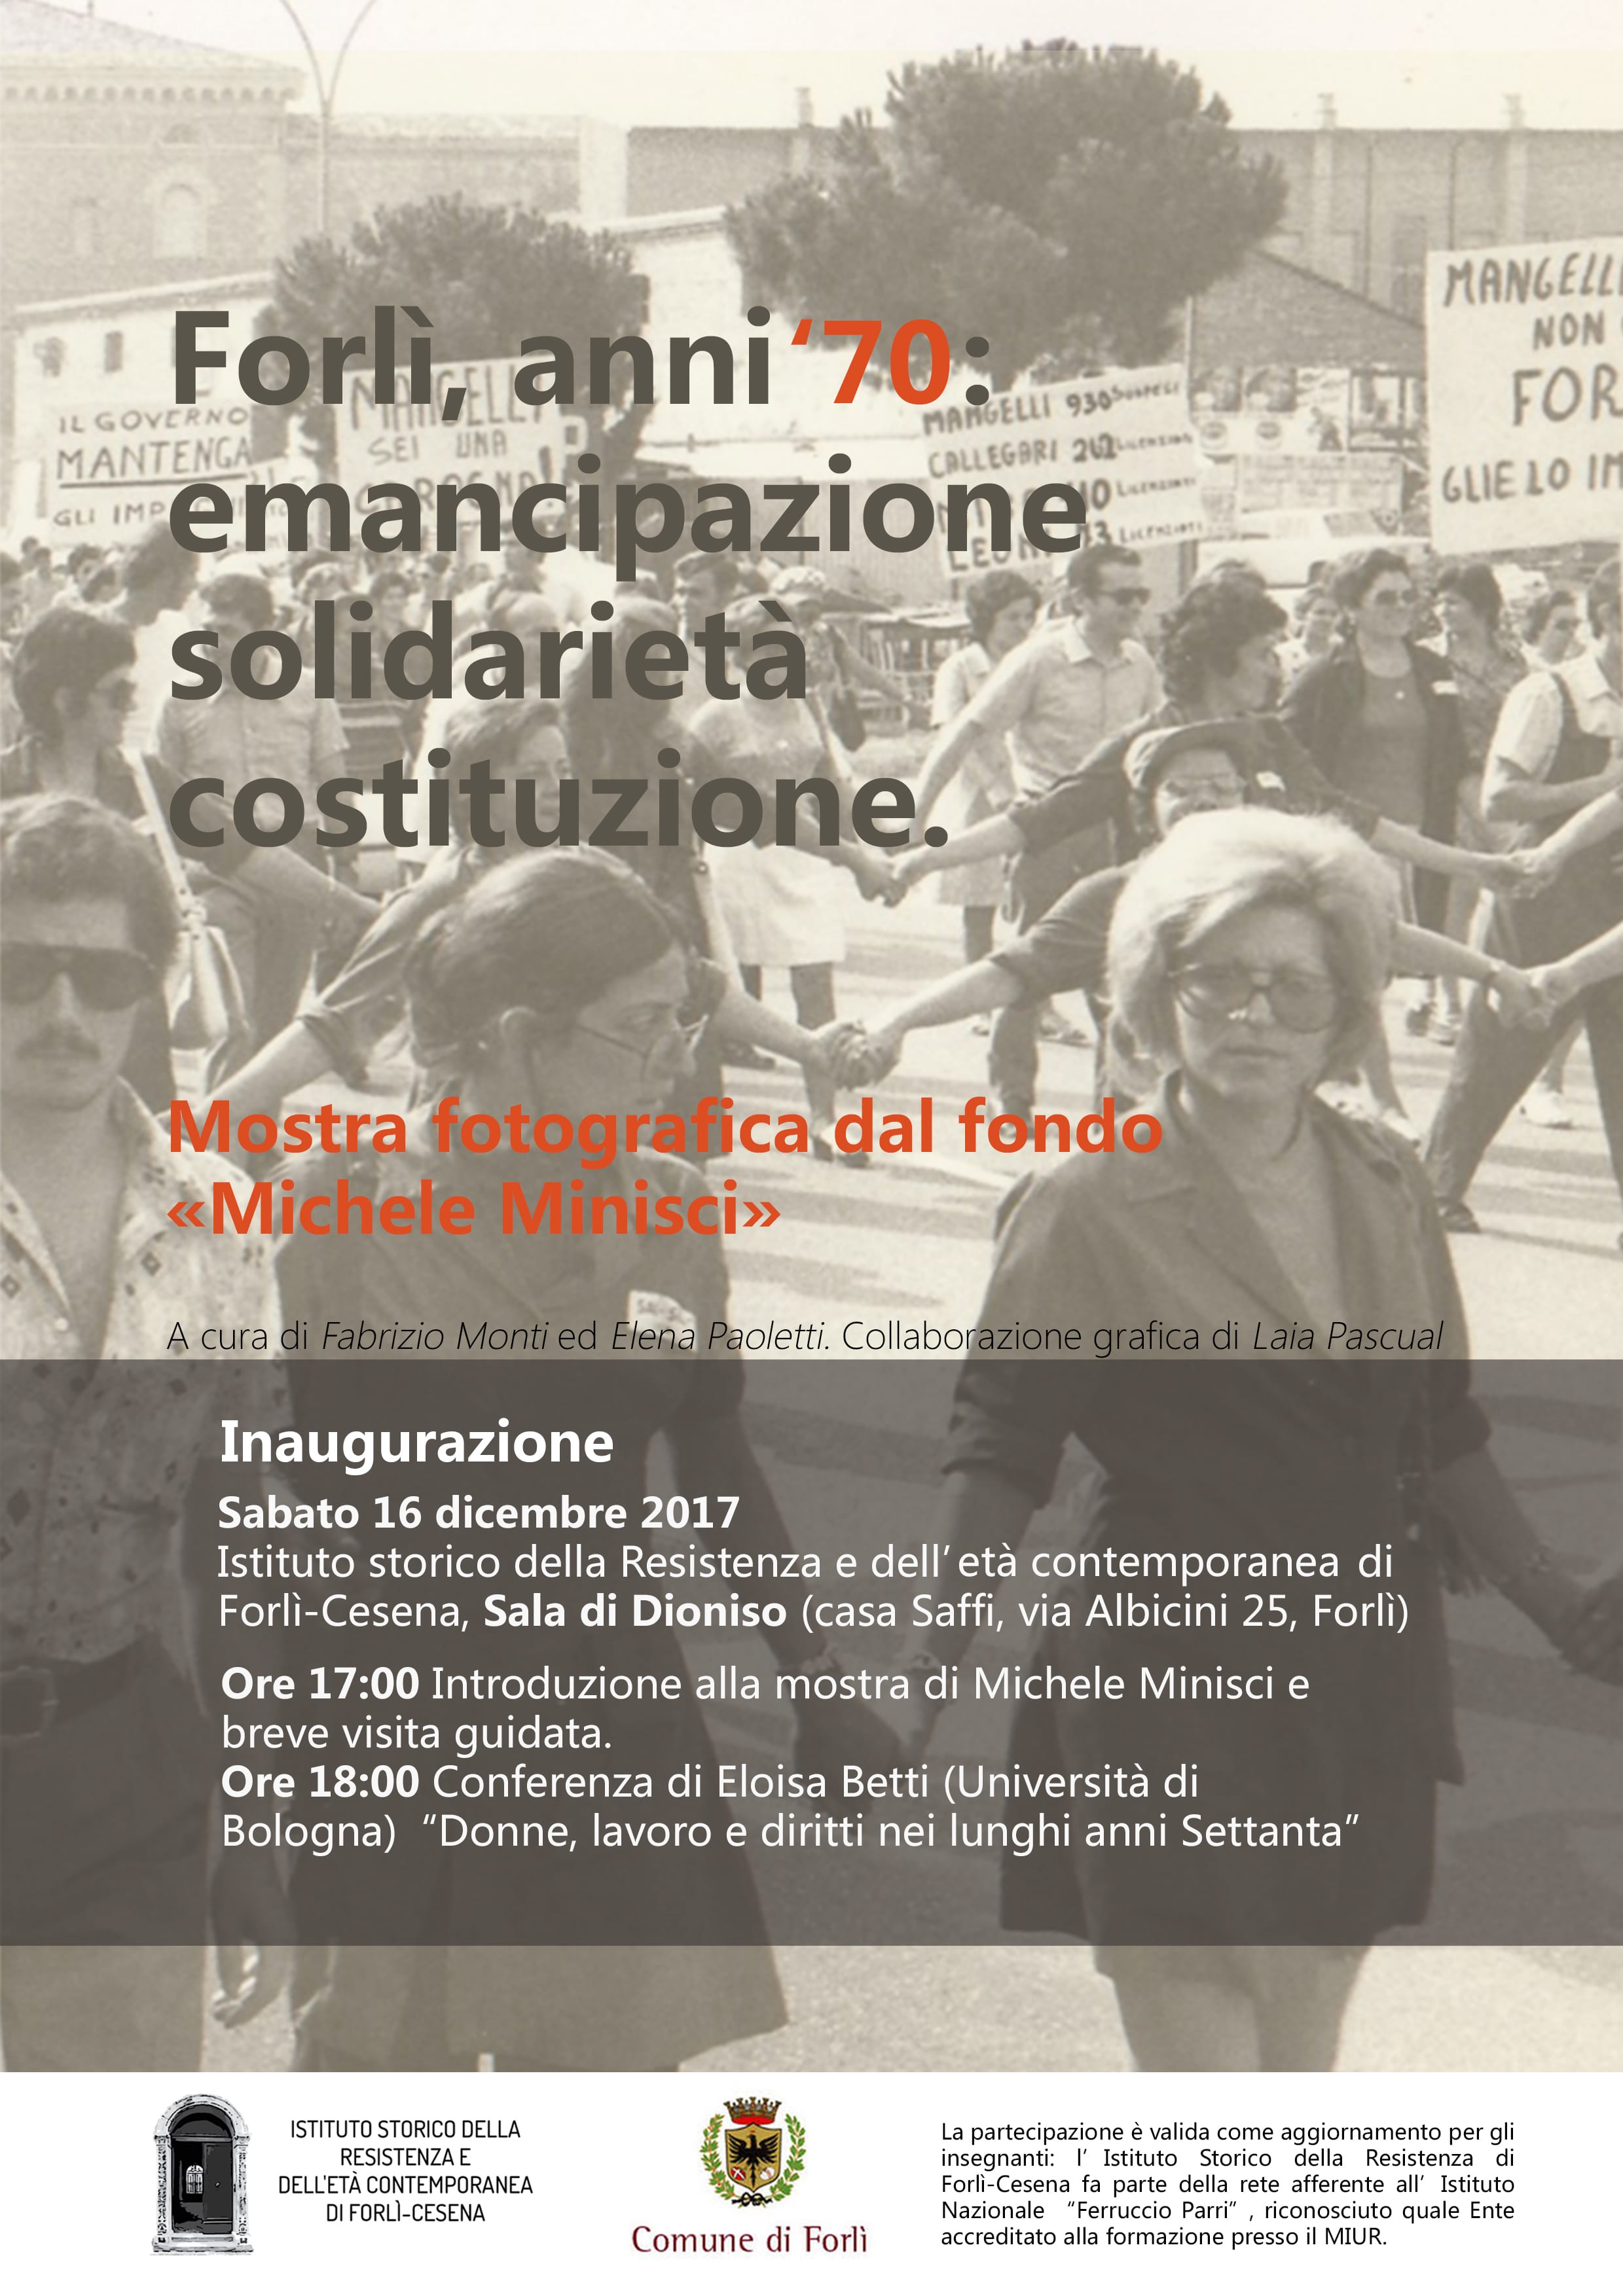 Forlì, anni '70: emancipazione, solidarietà, costituzione. Mostra fotografica dal fondo <<Michele Minisci>>